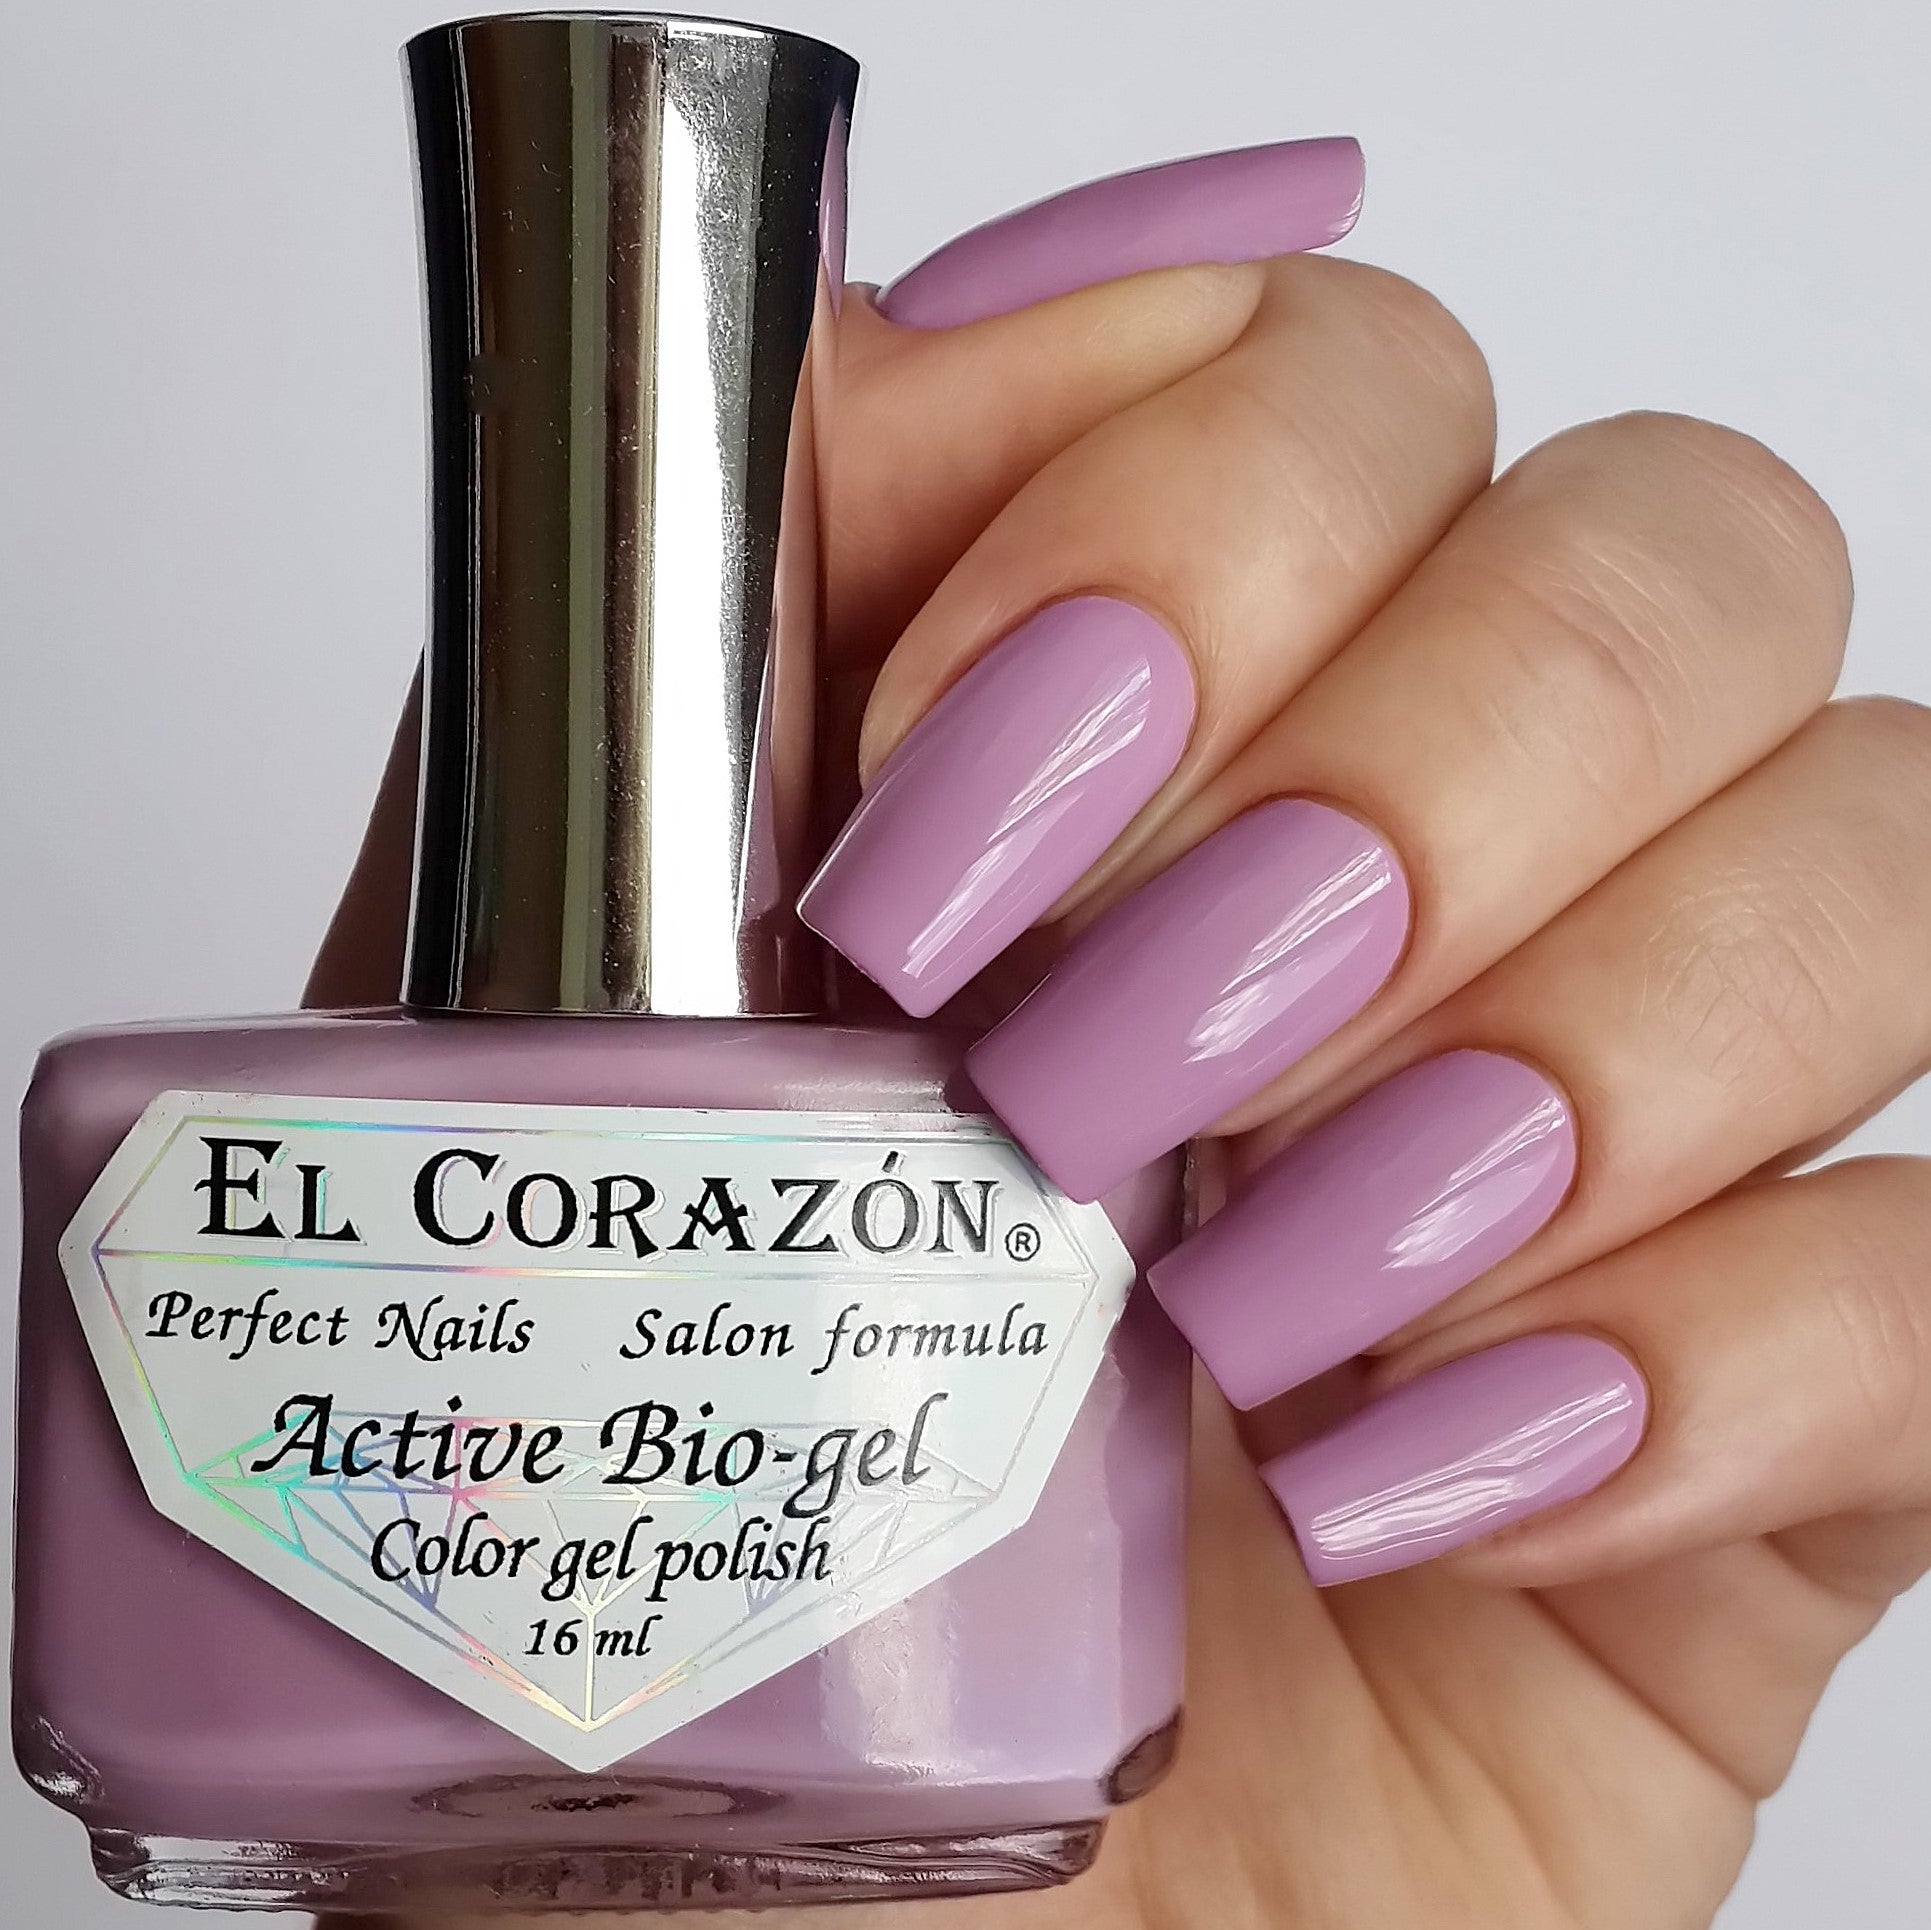 El Corazon Active Bio-gel Cream- 423/293 I Love My Polish